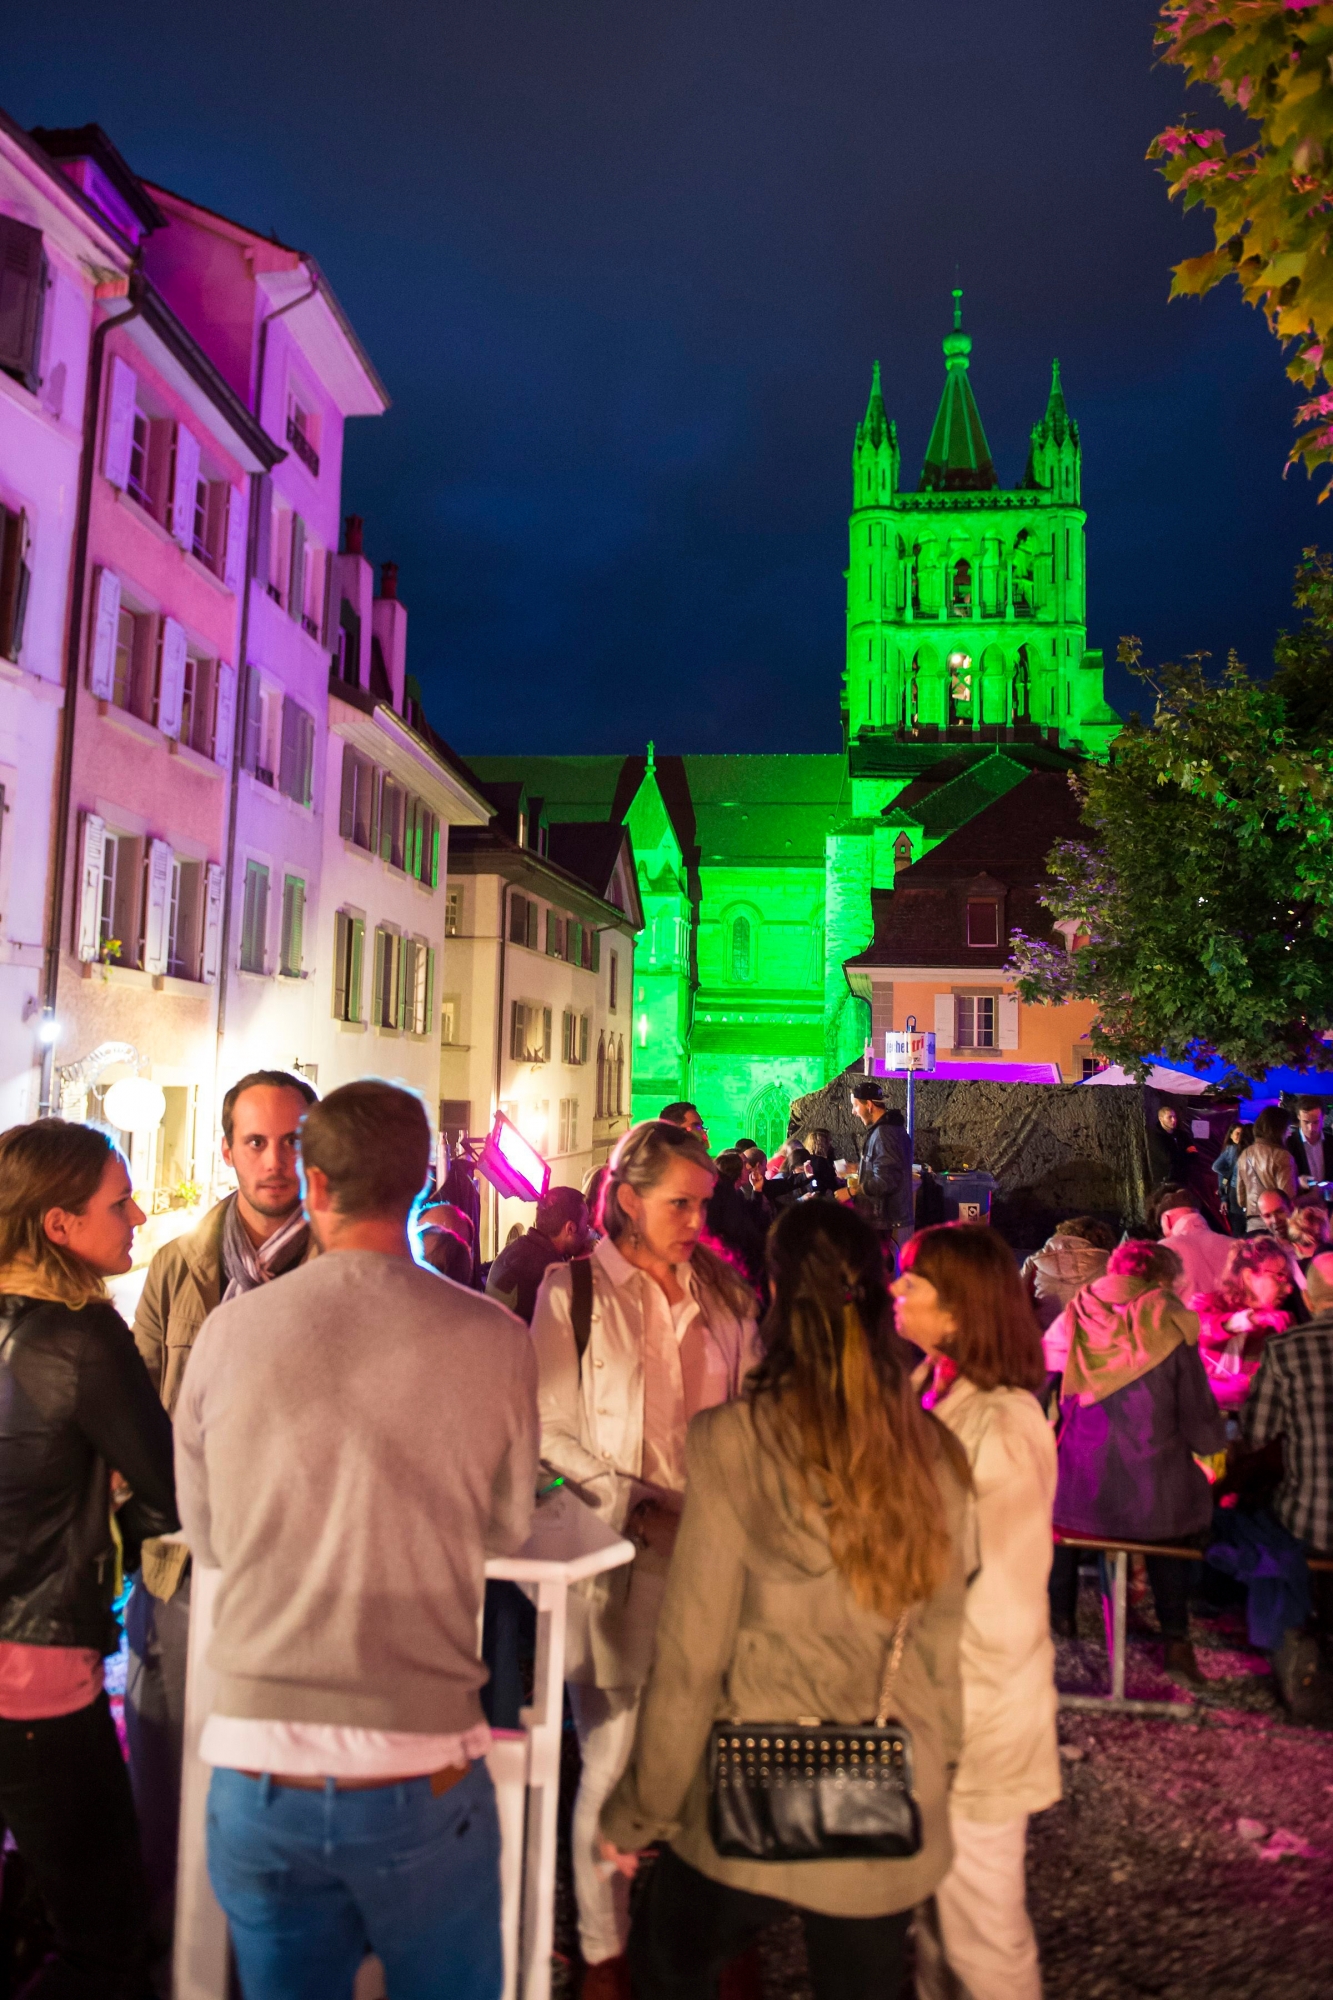 Des festivaliers ecoutent de la musique dans la cour de la Cite lors du Festival de la Cite ce vendredi soir 11 juillet 2014 a Lausanne. (KEYSTONE/Jean-Christophe Bott) SCHWEIZ FESTIVAL DE LA CITE LAUSANNE